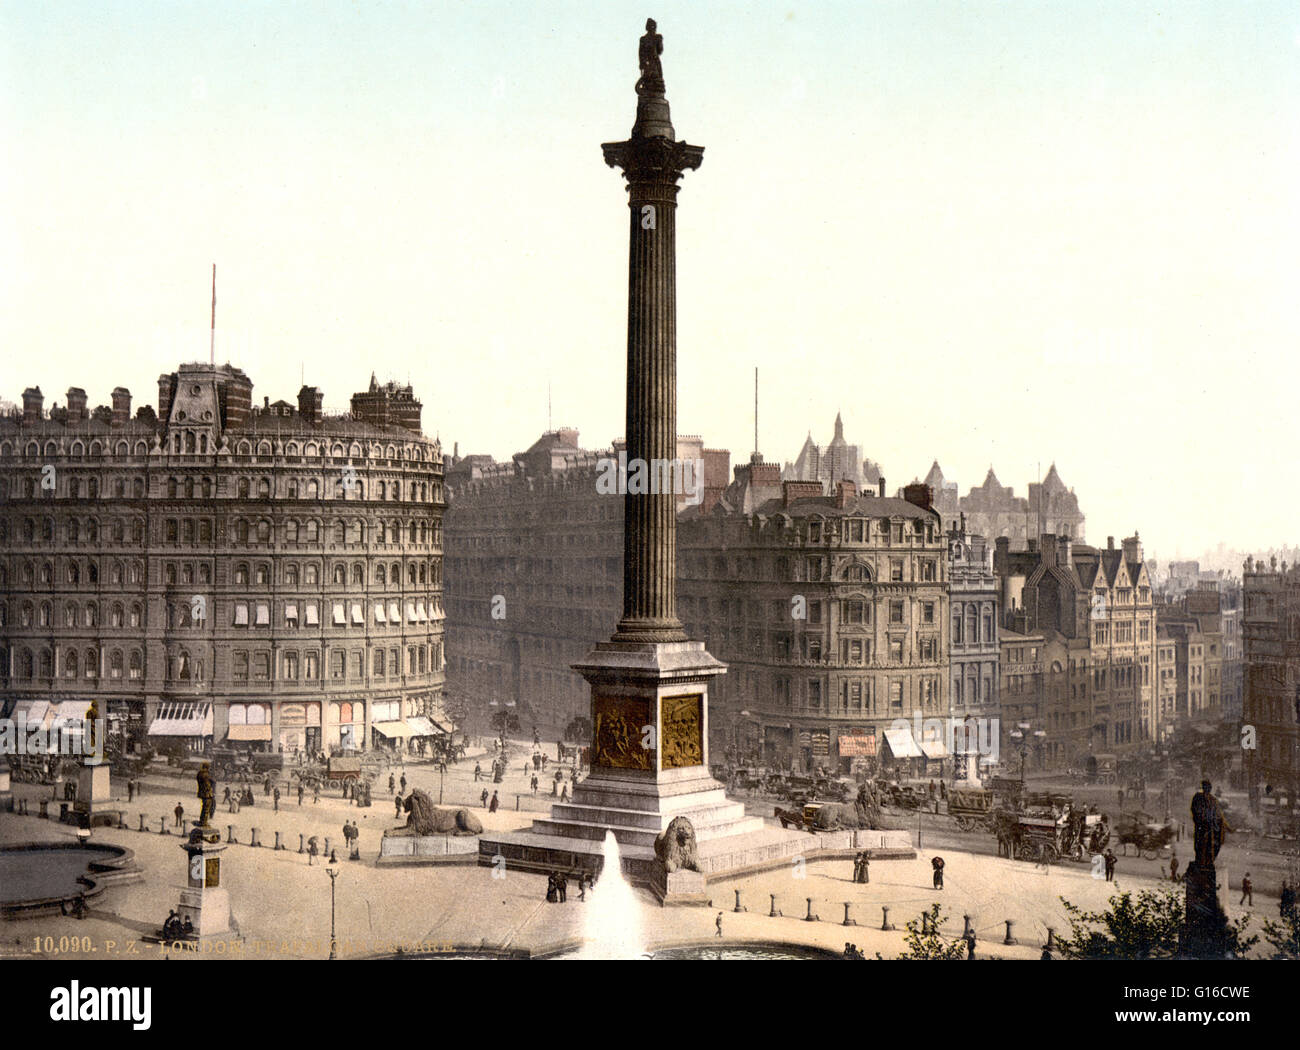 Trafalgar Square, von der National Gallery, London, England. Trafalgar Square ist eine öffentliche und touristische Attraktion im Zentrum von London, gebaut in der Gegend früher bekannt als Charing Cross. Es liegt in der City of Westminster. In ihrem Zentrum ist Nelso Stockfoto